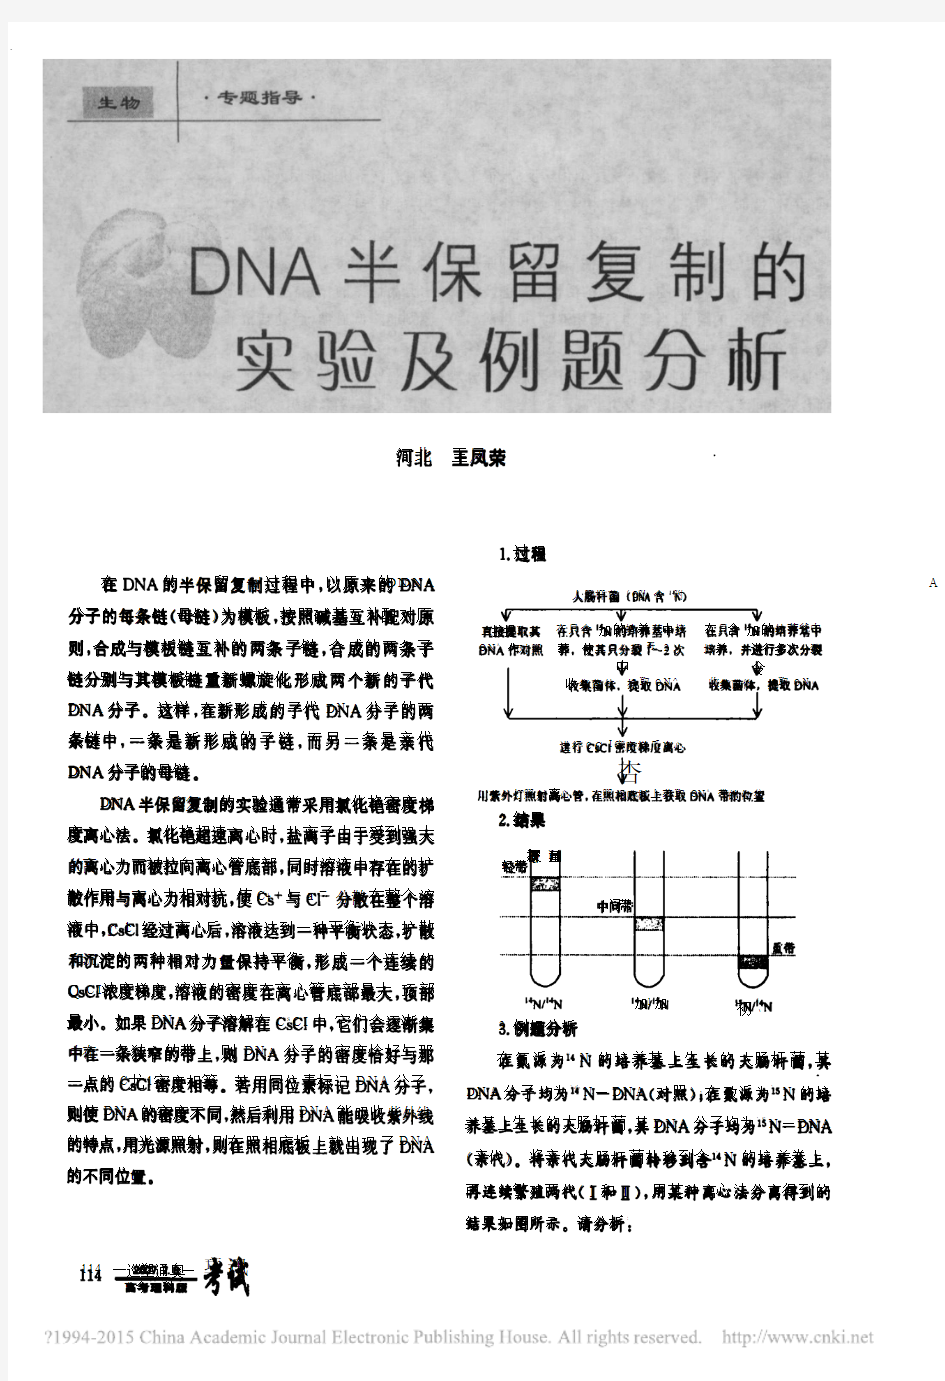 DNA半保留复制的实验及例题分新_王凤荣